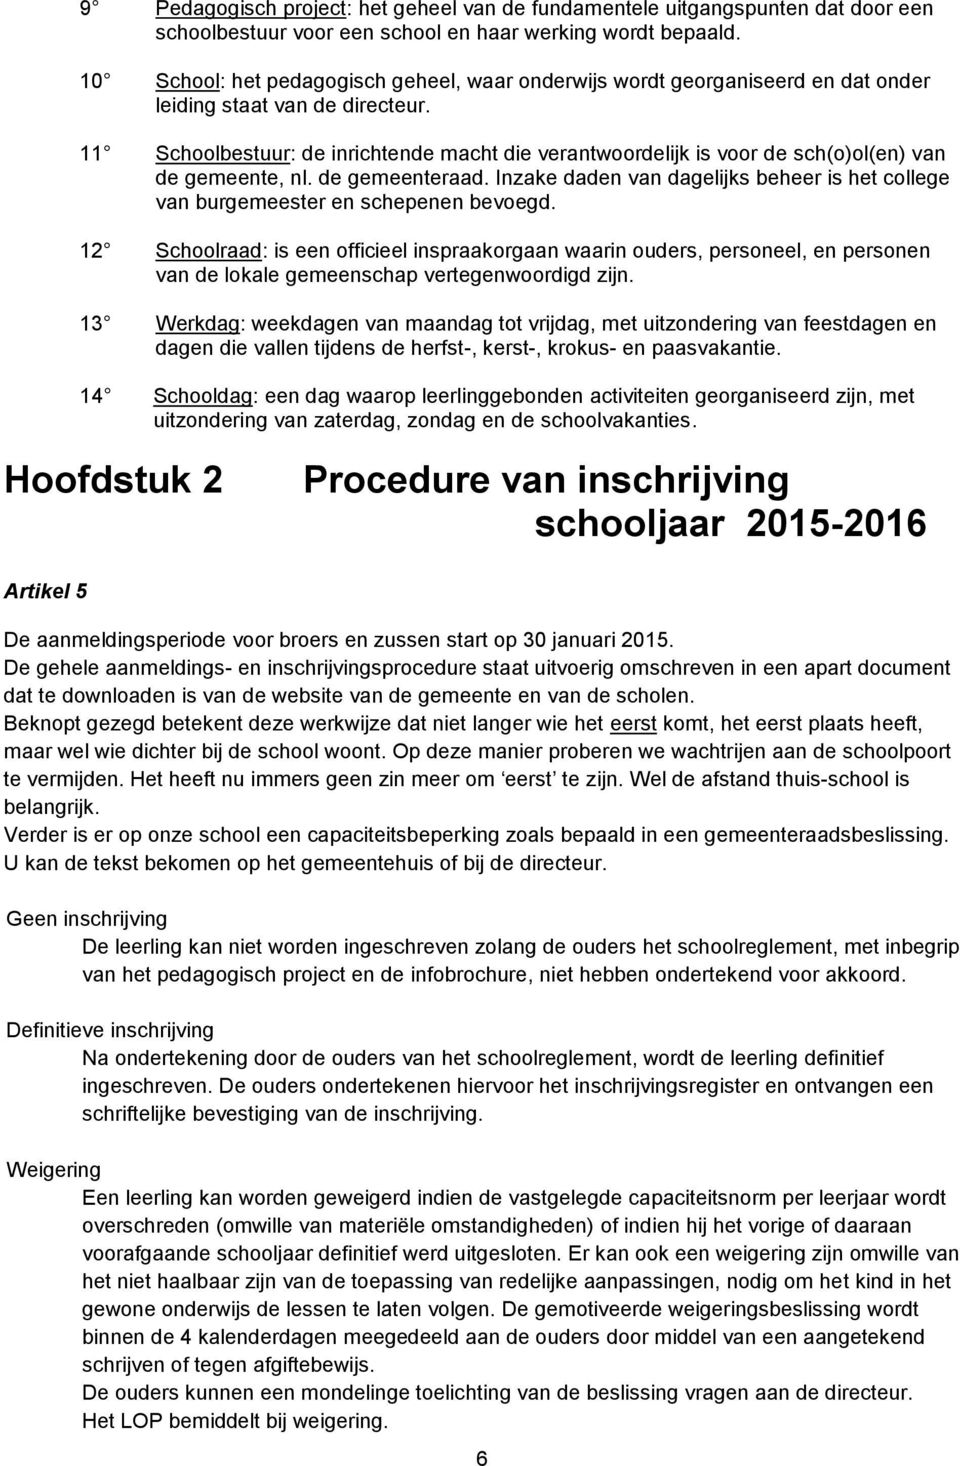 11 Schoolbestuur: de inrichtende macht die verantwoordelijk is voor de sch(o)ol(en) van de gemeente, nl. de gemeenteraad.